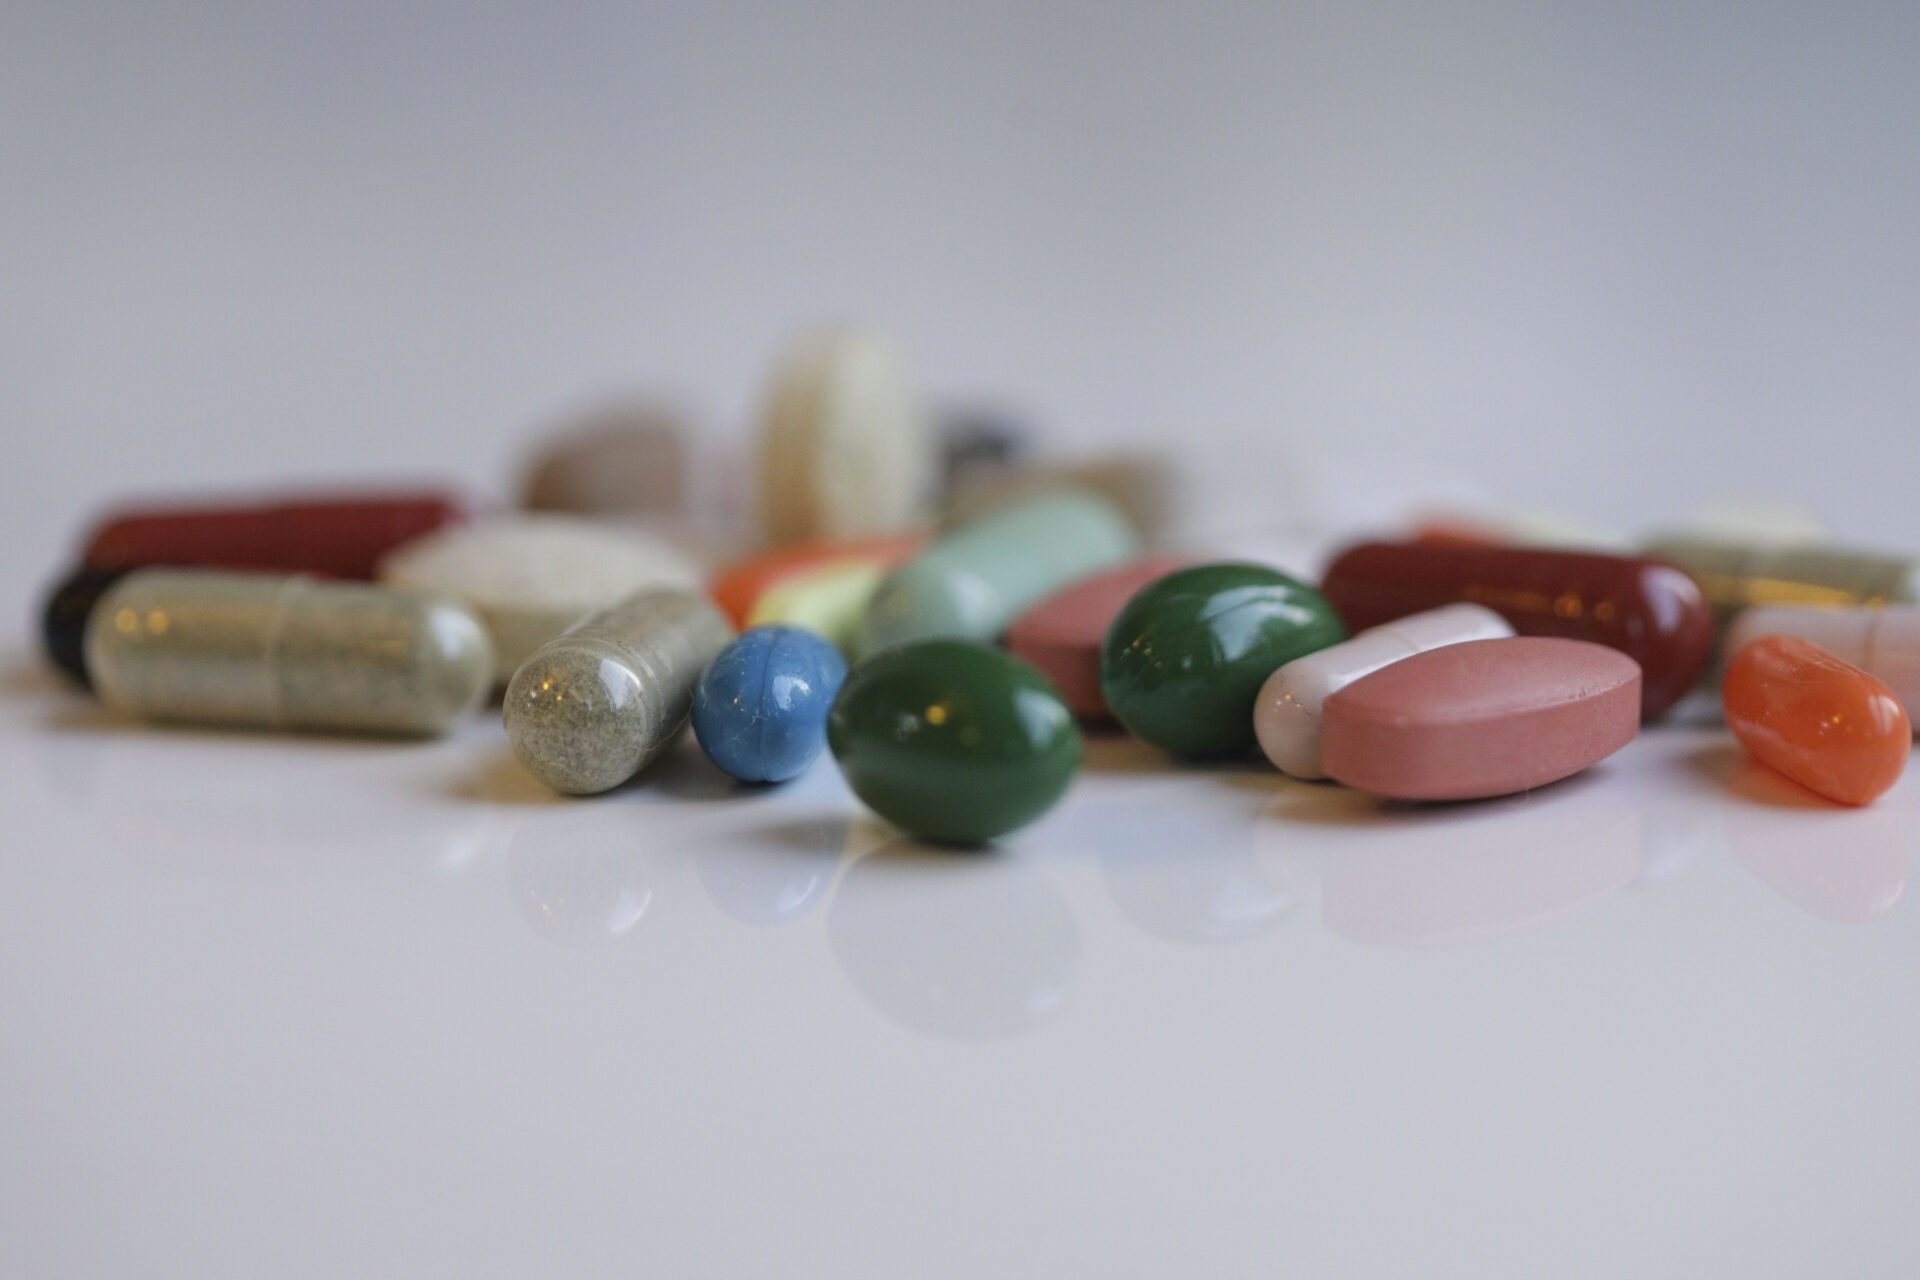 Comisia Europeană a solicitat suspendarea autorizaţiei pentru o serie de medicamente neconforme. Câte sunt în România